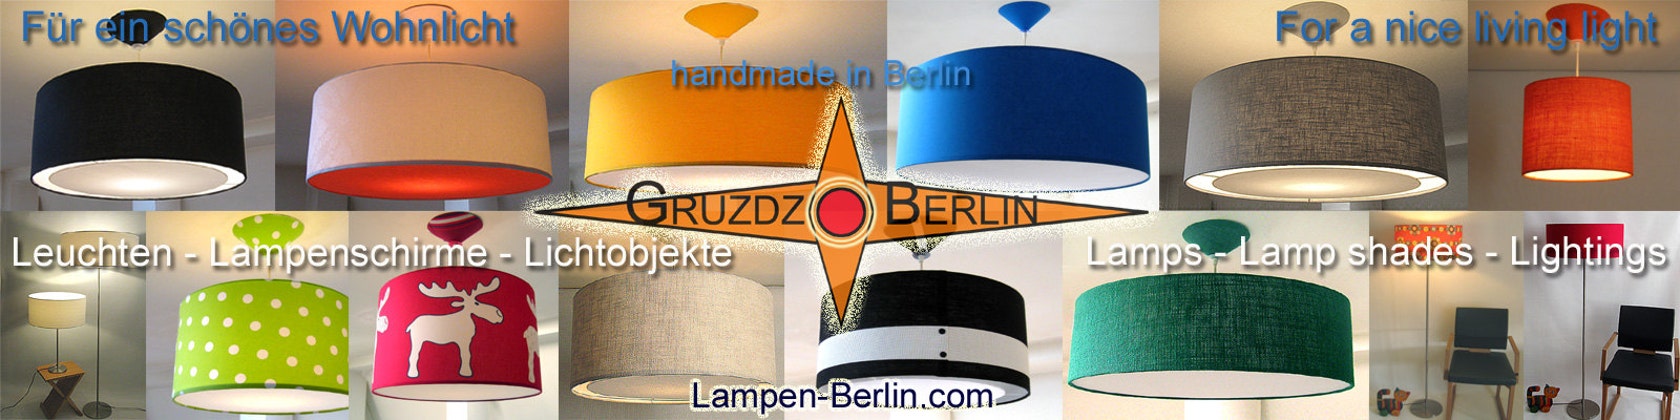 Gruzdz-Berlin: Leuchten, Lampenschirme, Lichtobjekte - XXL Hängelampe aus  orangem Leinen mit Lichtrand Diffusor